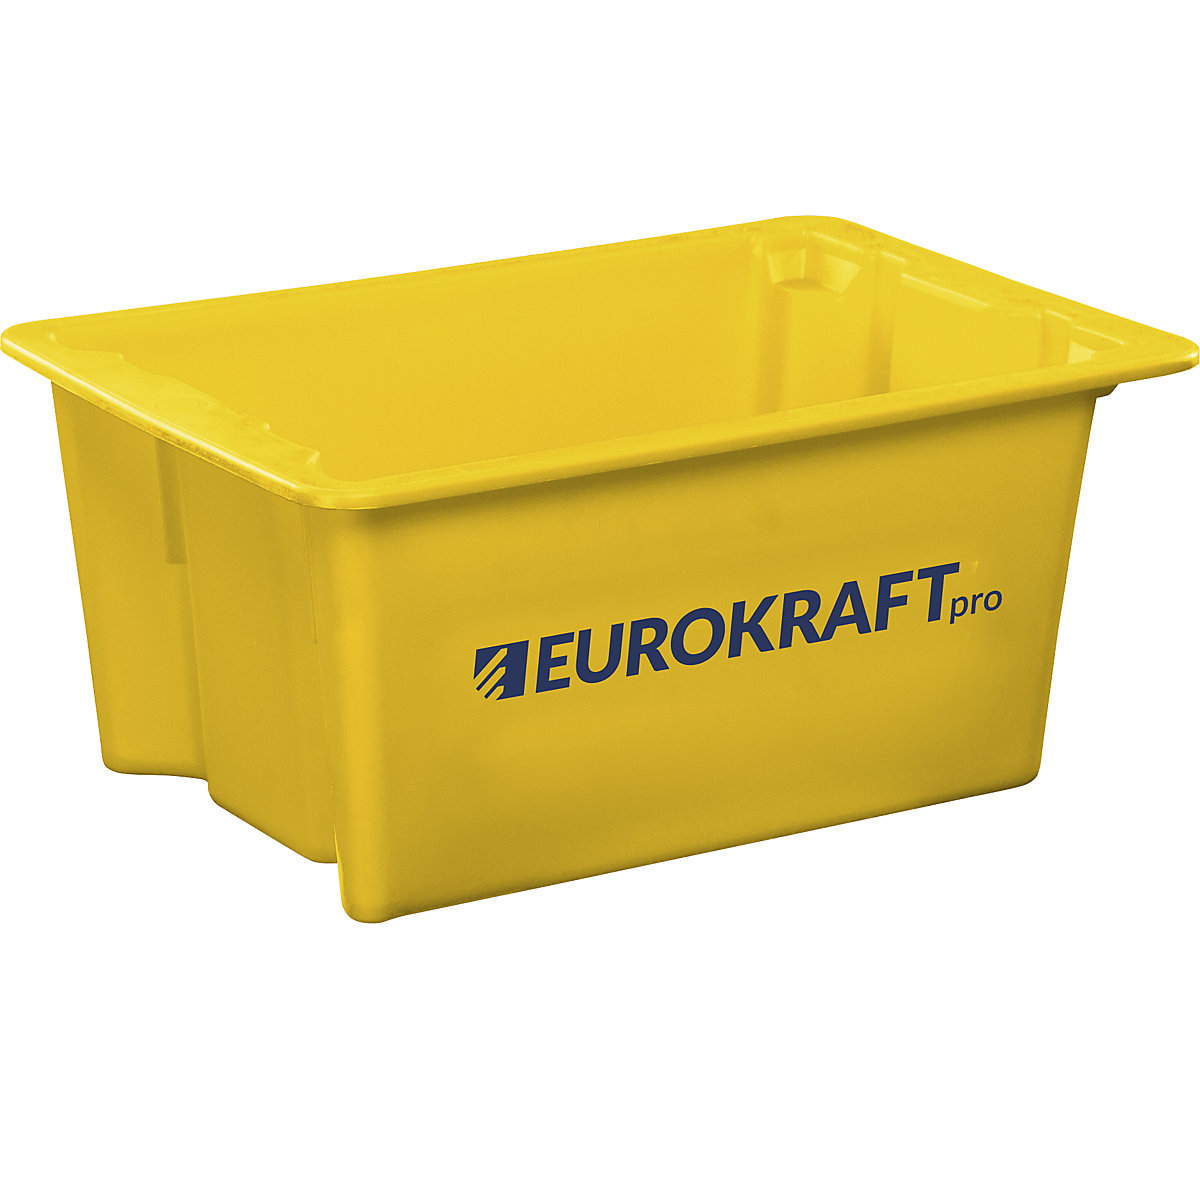 Elforgatva egymásra rakható tárolók élelmiszerekhez alkalmas polipropilénből – eurokraft pro, térfogat 6 l, cs. e. 4 db, zárt falak és alj, sárga-8